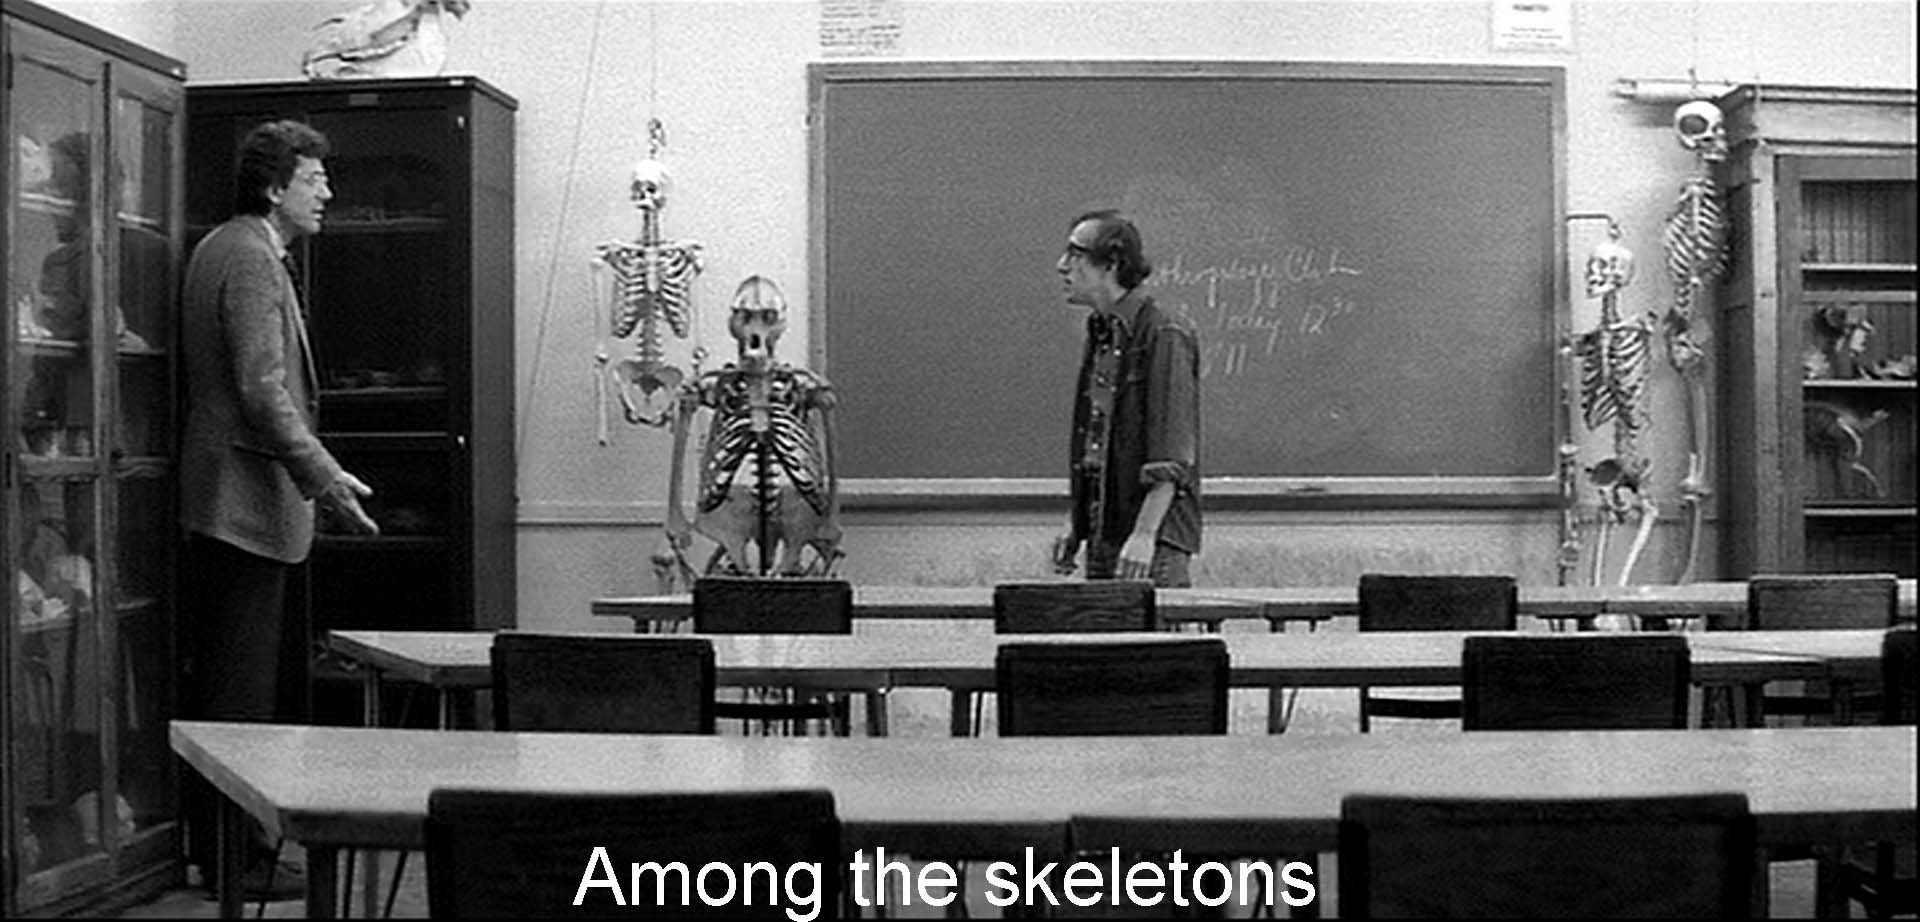 Among the skeletons